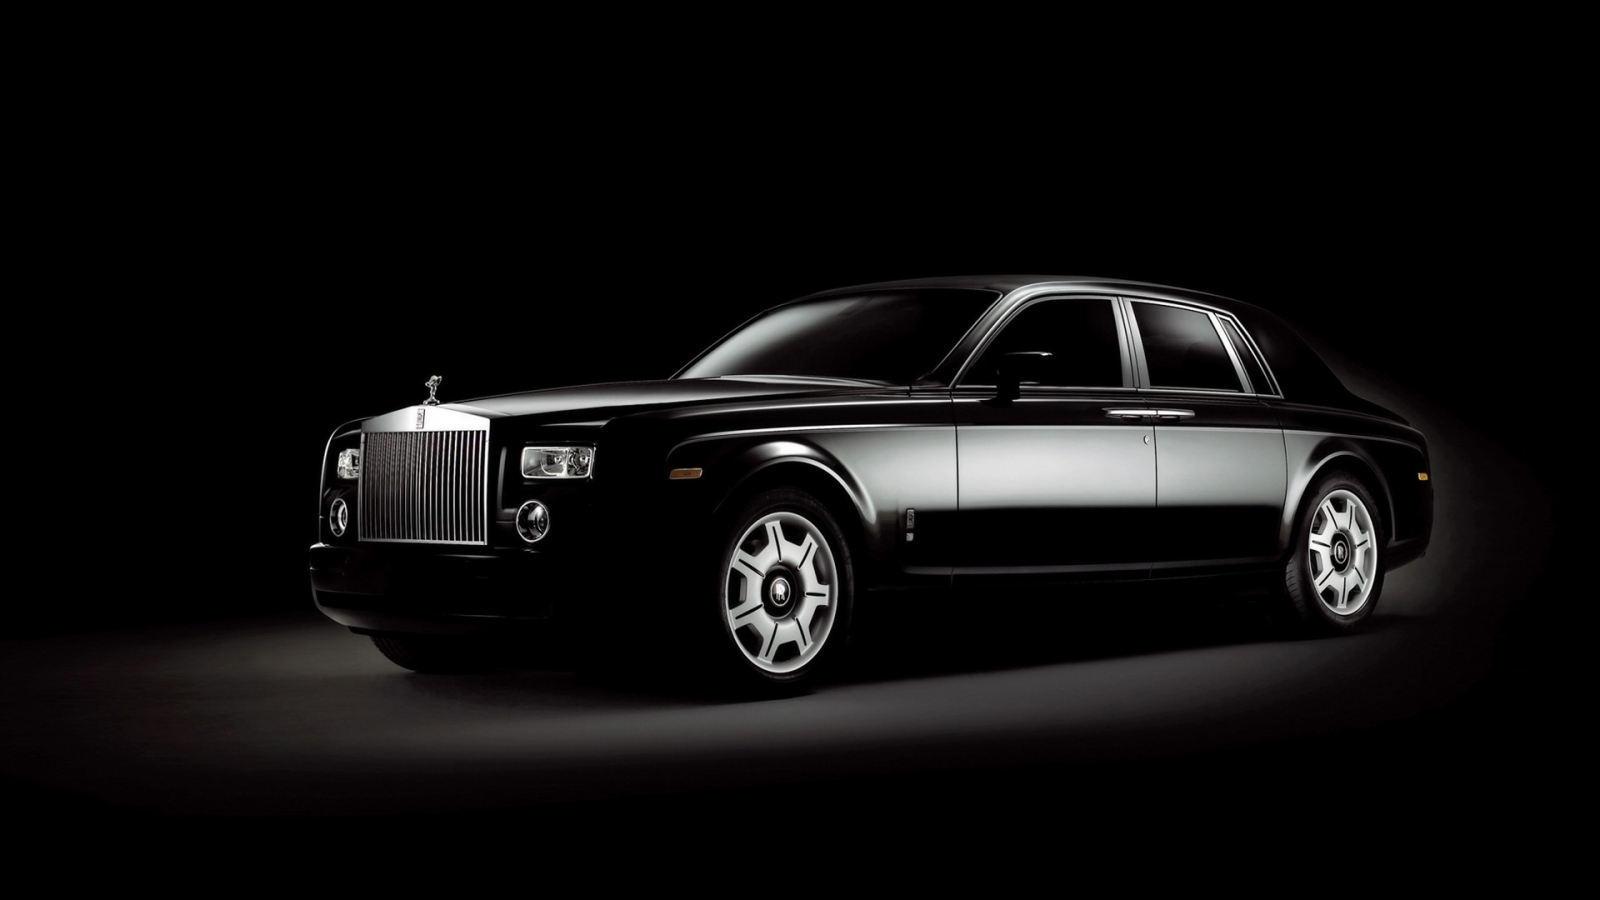 Rolls Royce Phantom Black for 1600 x 900 HDTV resolution